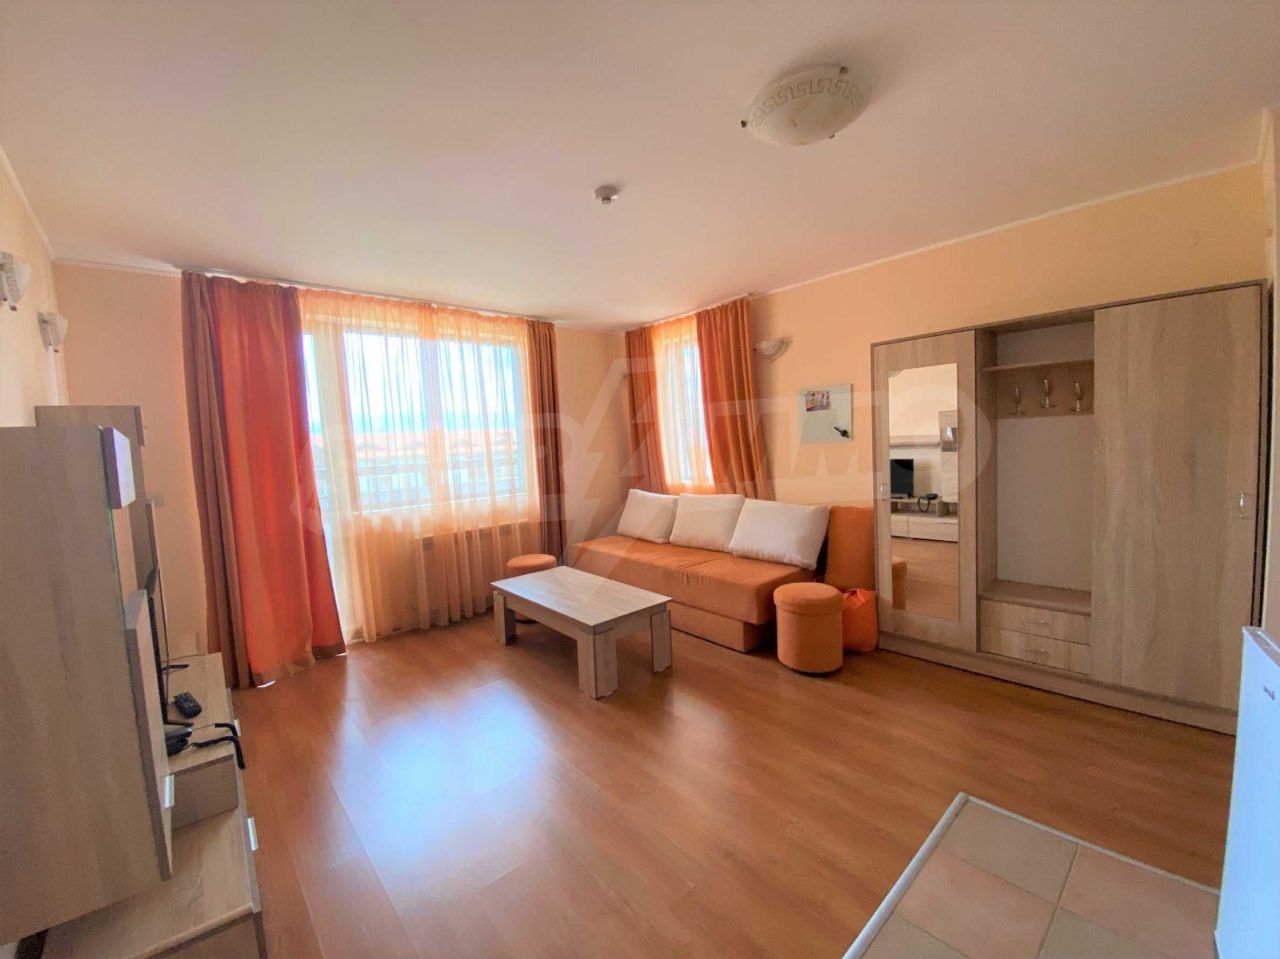 Apartment in Bansko, Bulgaria, 73.26 sq.m - picture 1